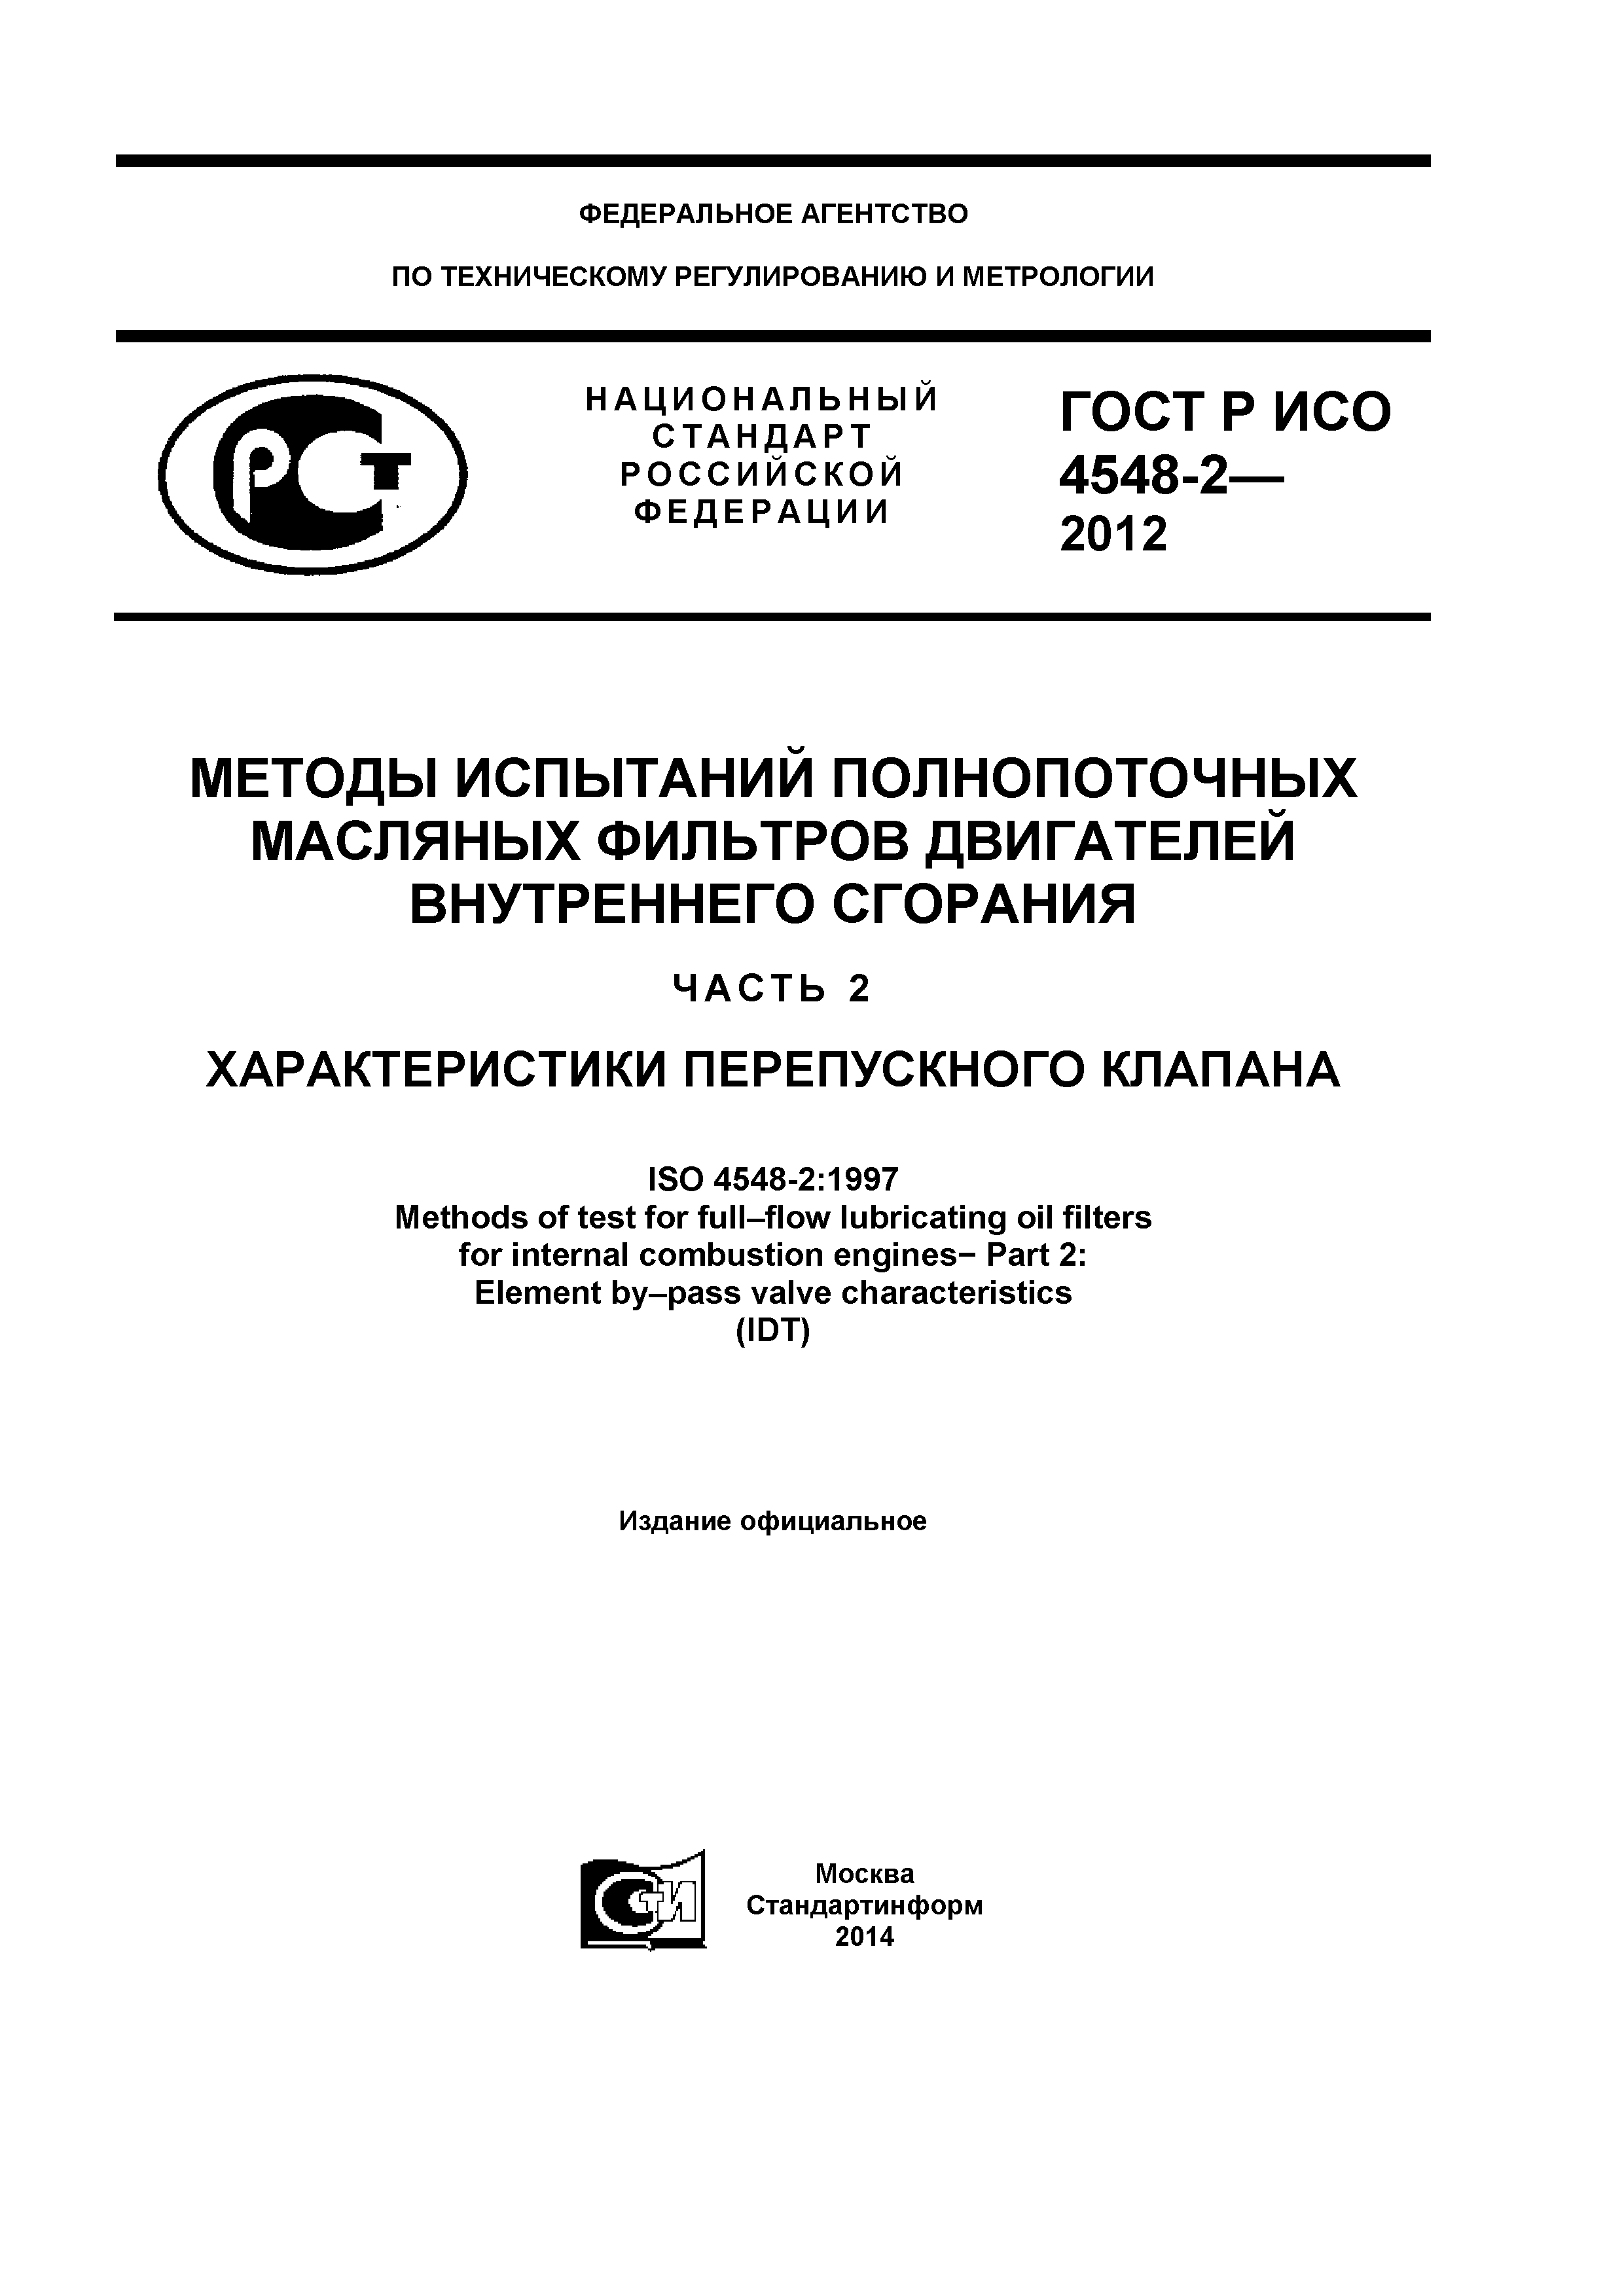 ГОСТ Р ИСО 4548-2-2012